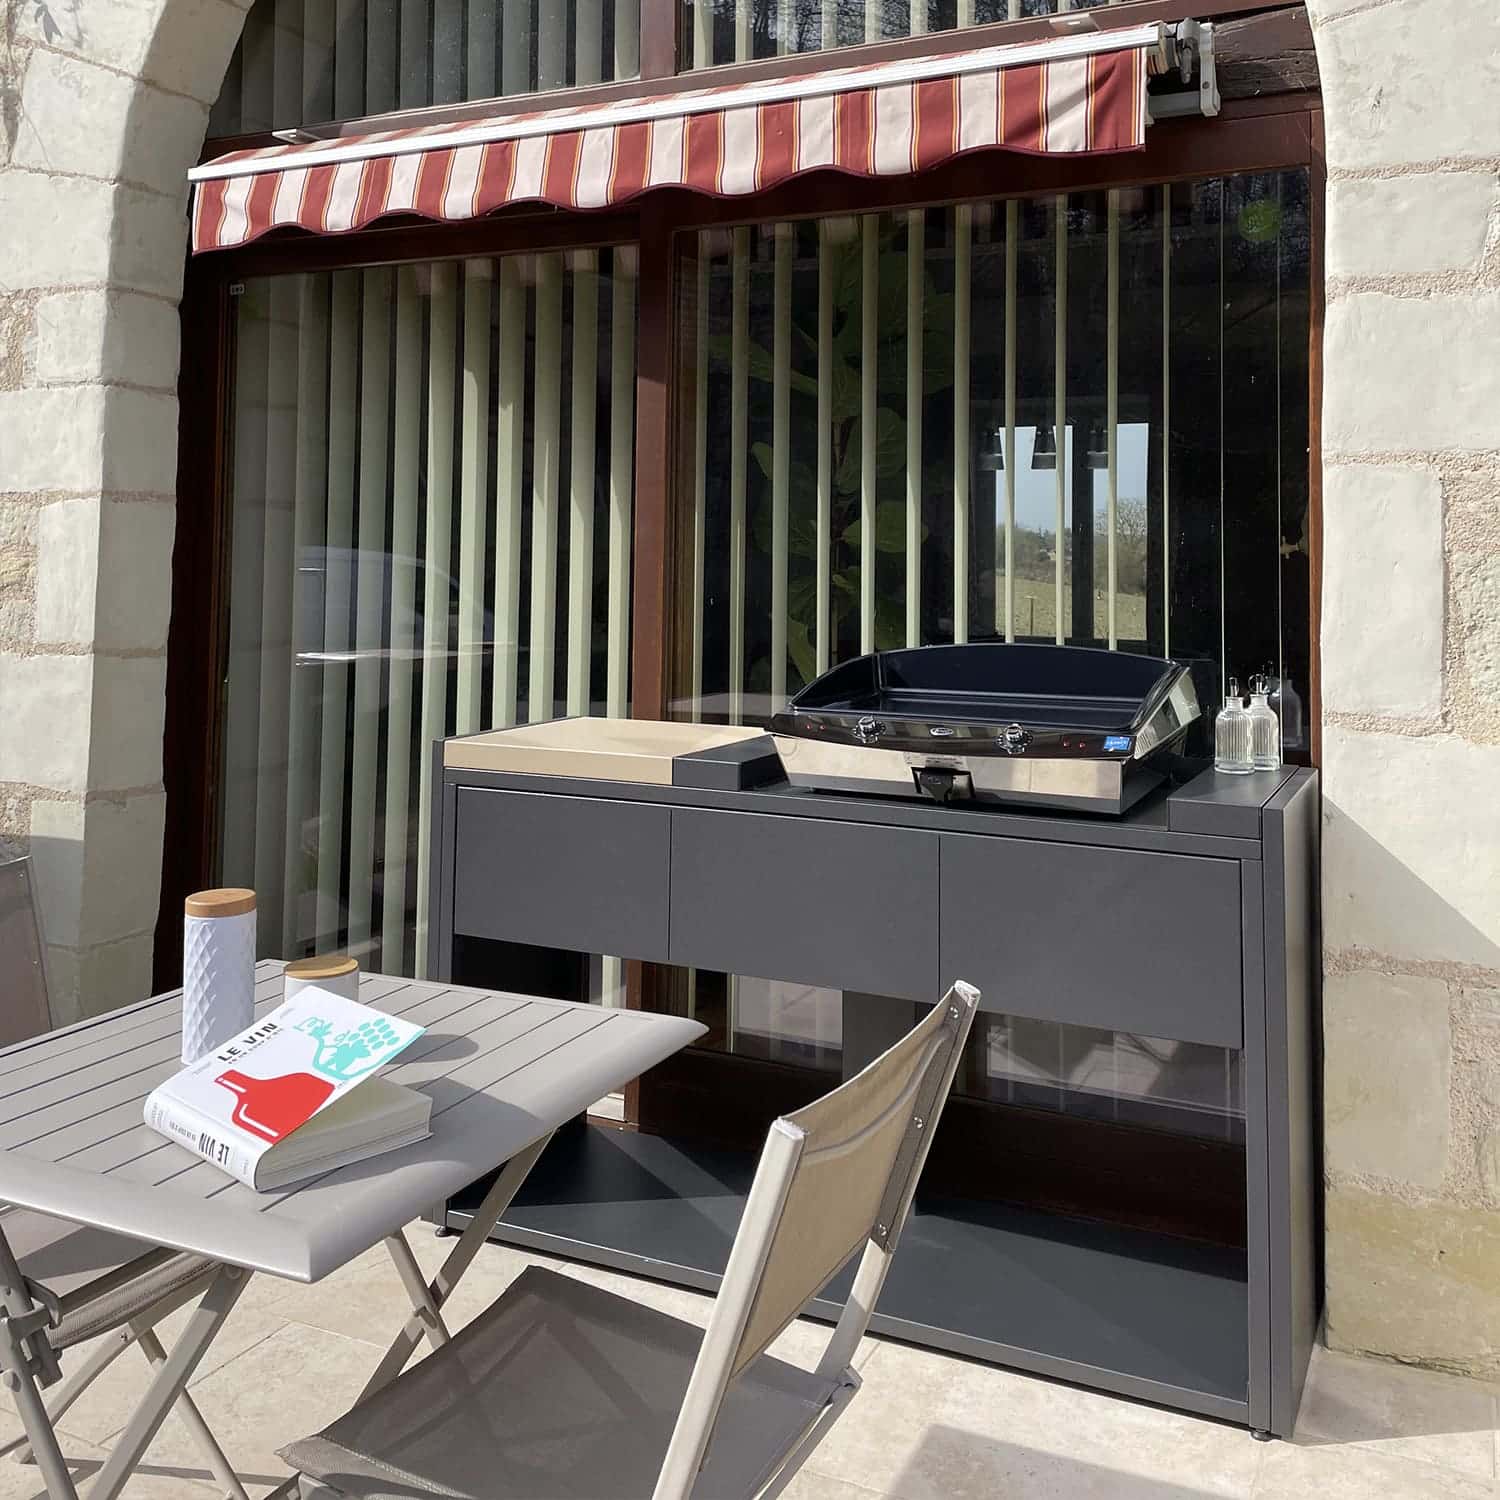 Module de cuisine extérieure Soleil Carré avec une plancha sur une terrasse. Disponible chez Inox Passion